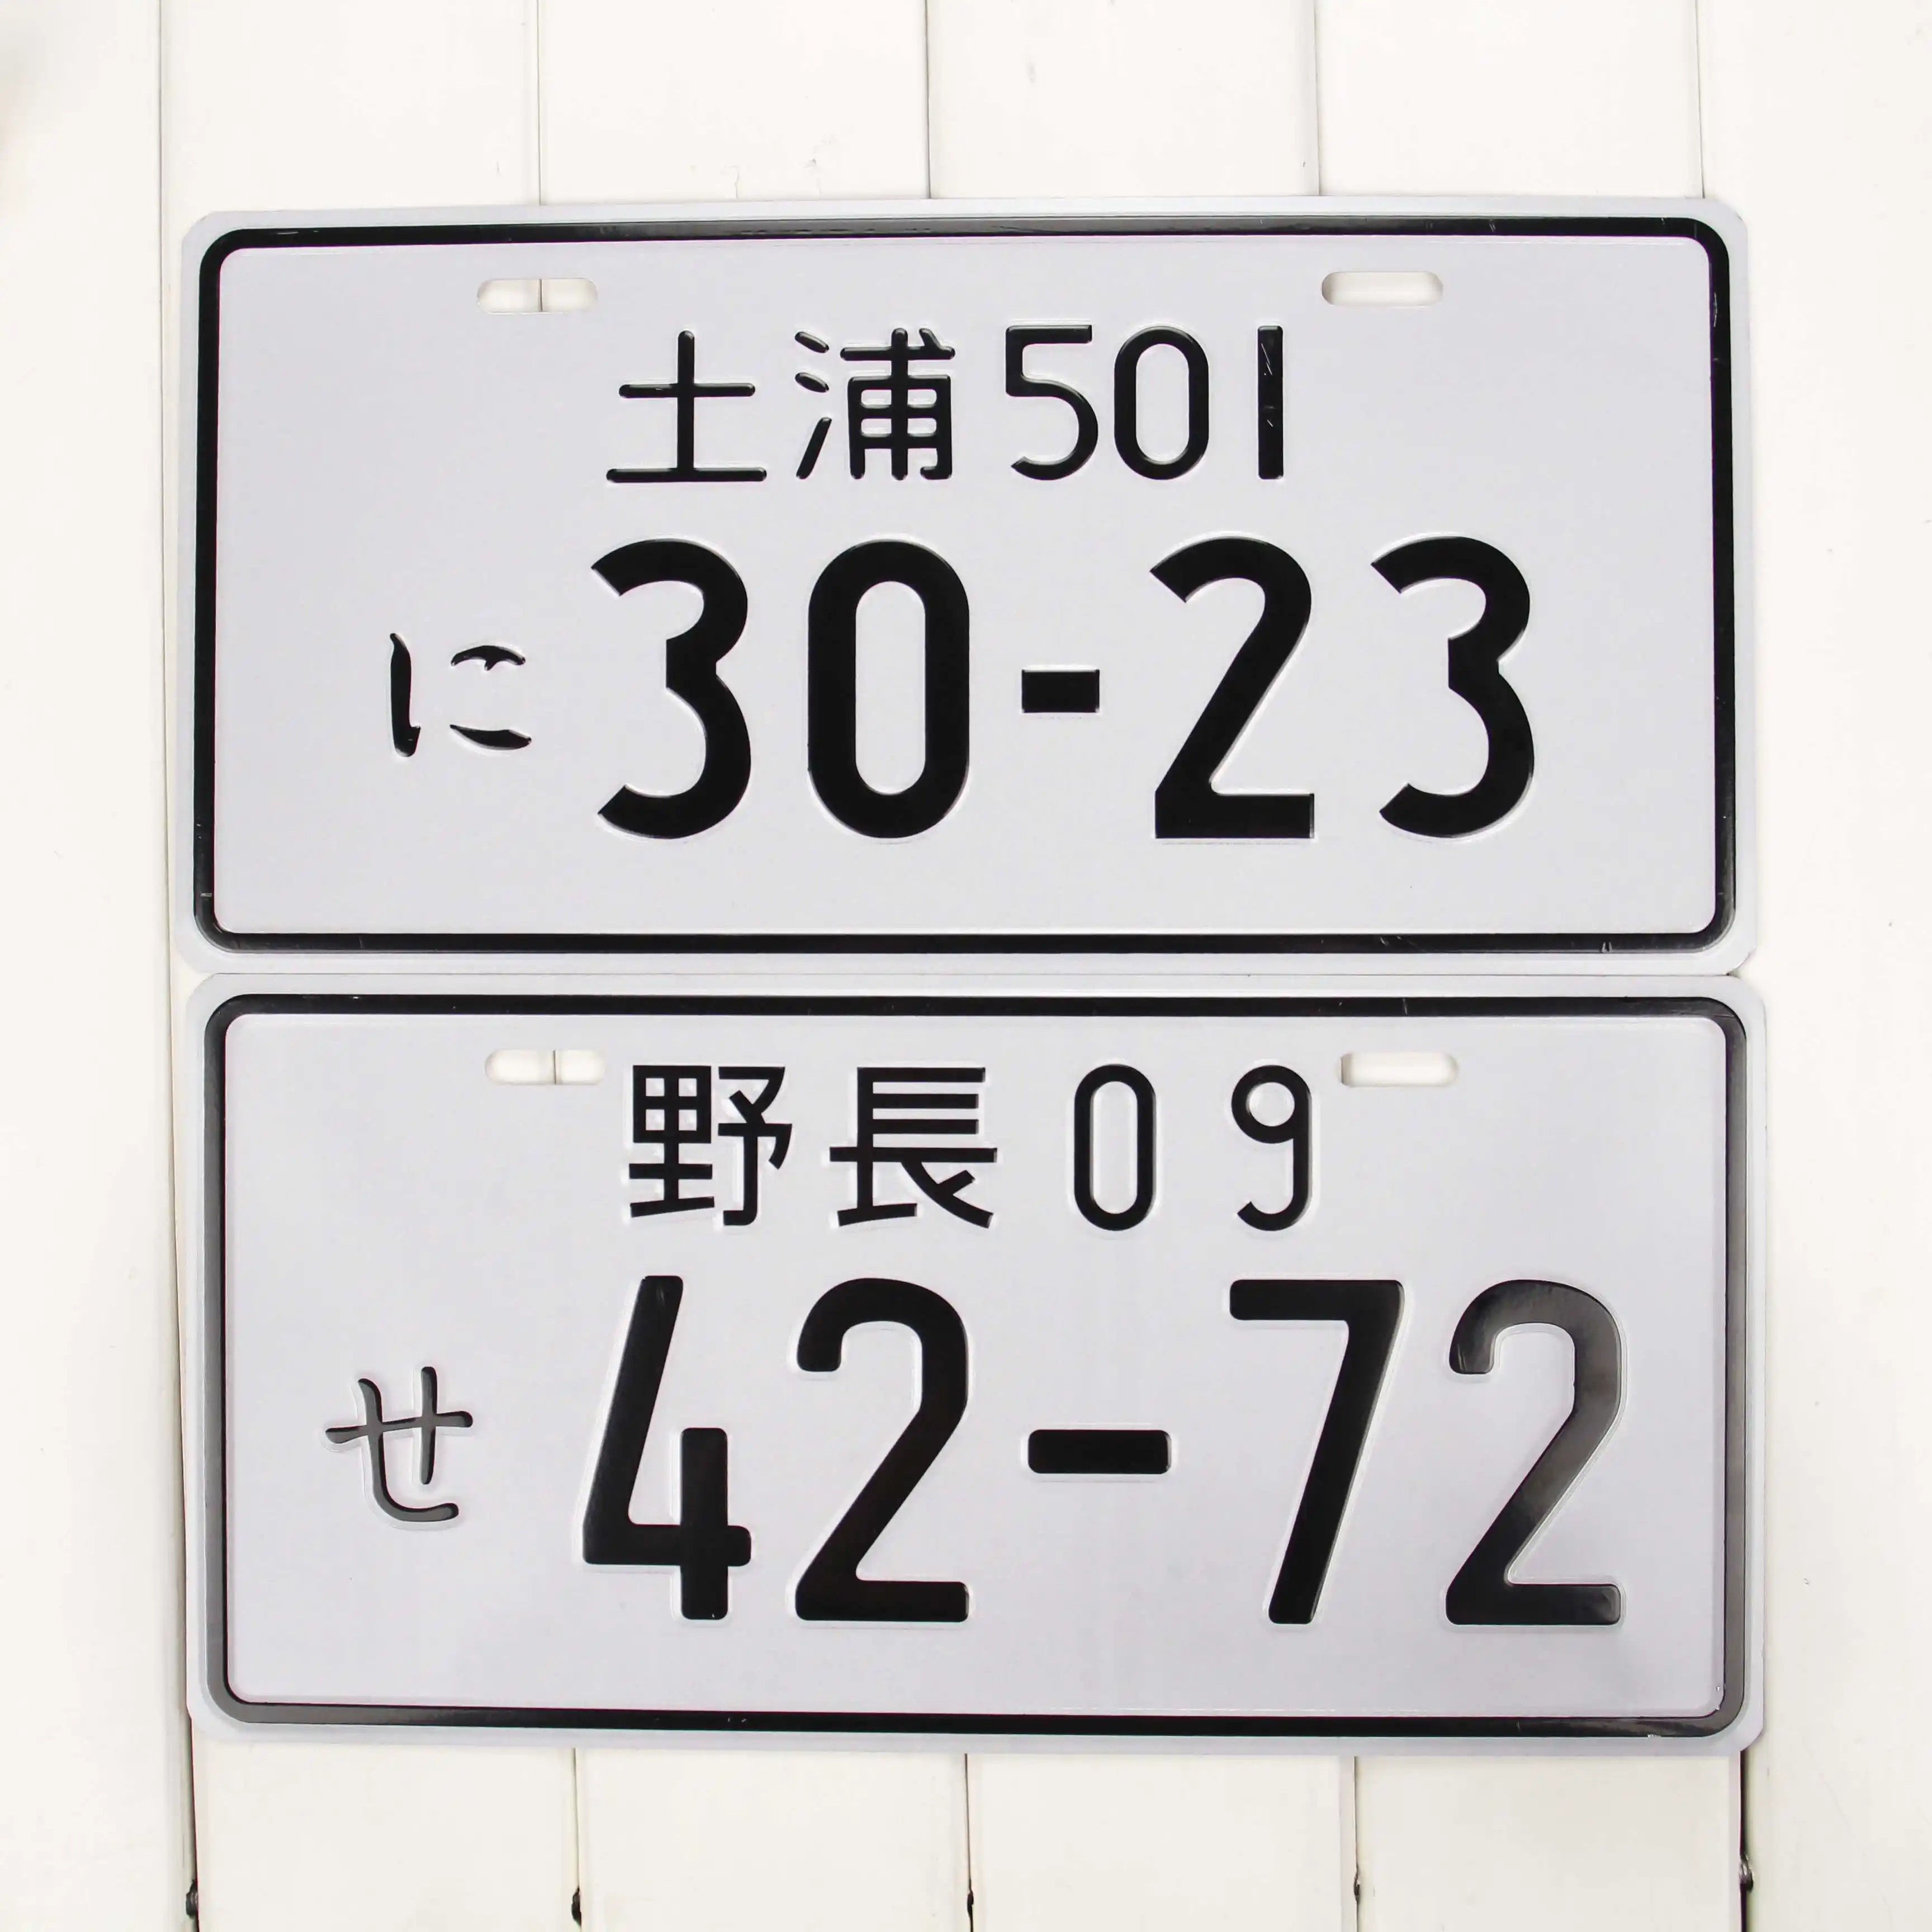 Vente en gros Japon Numéro de plaque d'immatriculation modifié décoratif Aluminium Métal Japon Plaque d'immatriculation